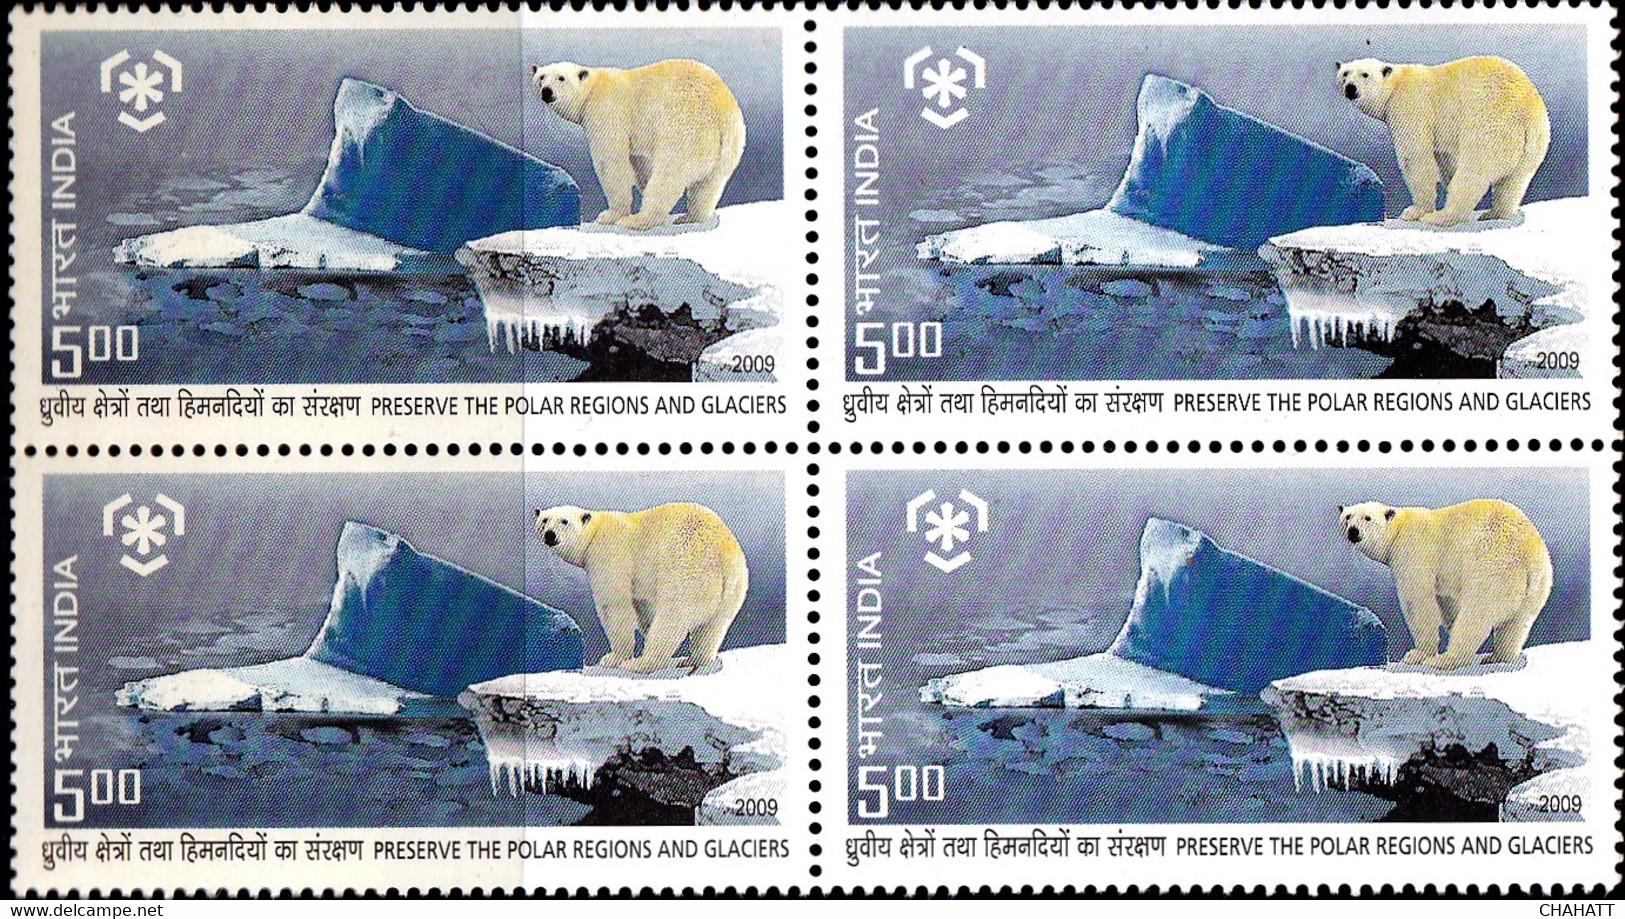 POLAR BEARS - PRESERVE THE POLAR REGIONS AND GLACIER- BLOCK OF 4 WITH CORNER PAIR-VARIETY-INDIA 2009-MNH-D5-41 - Schützen Wir Die Polarregionen Und Gletscher